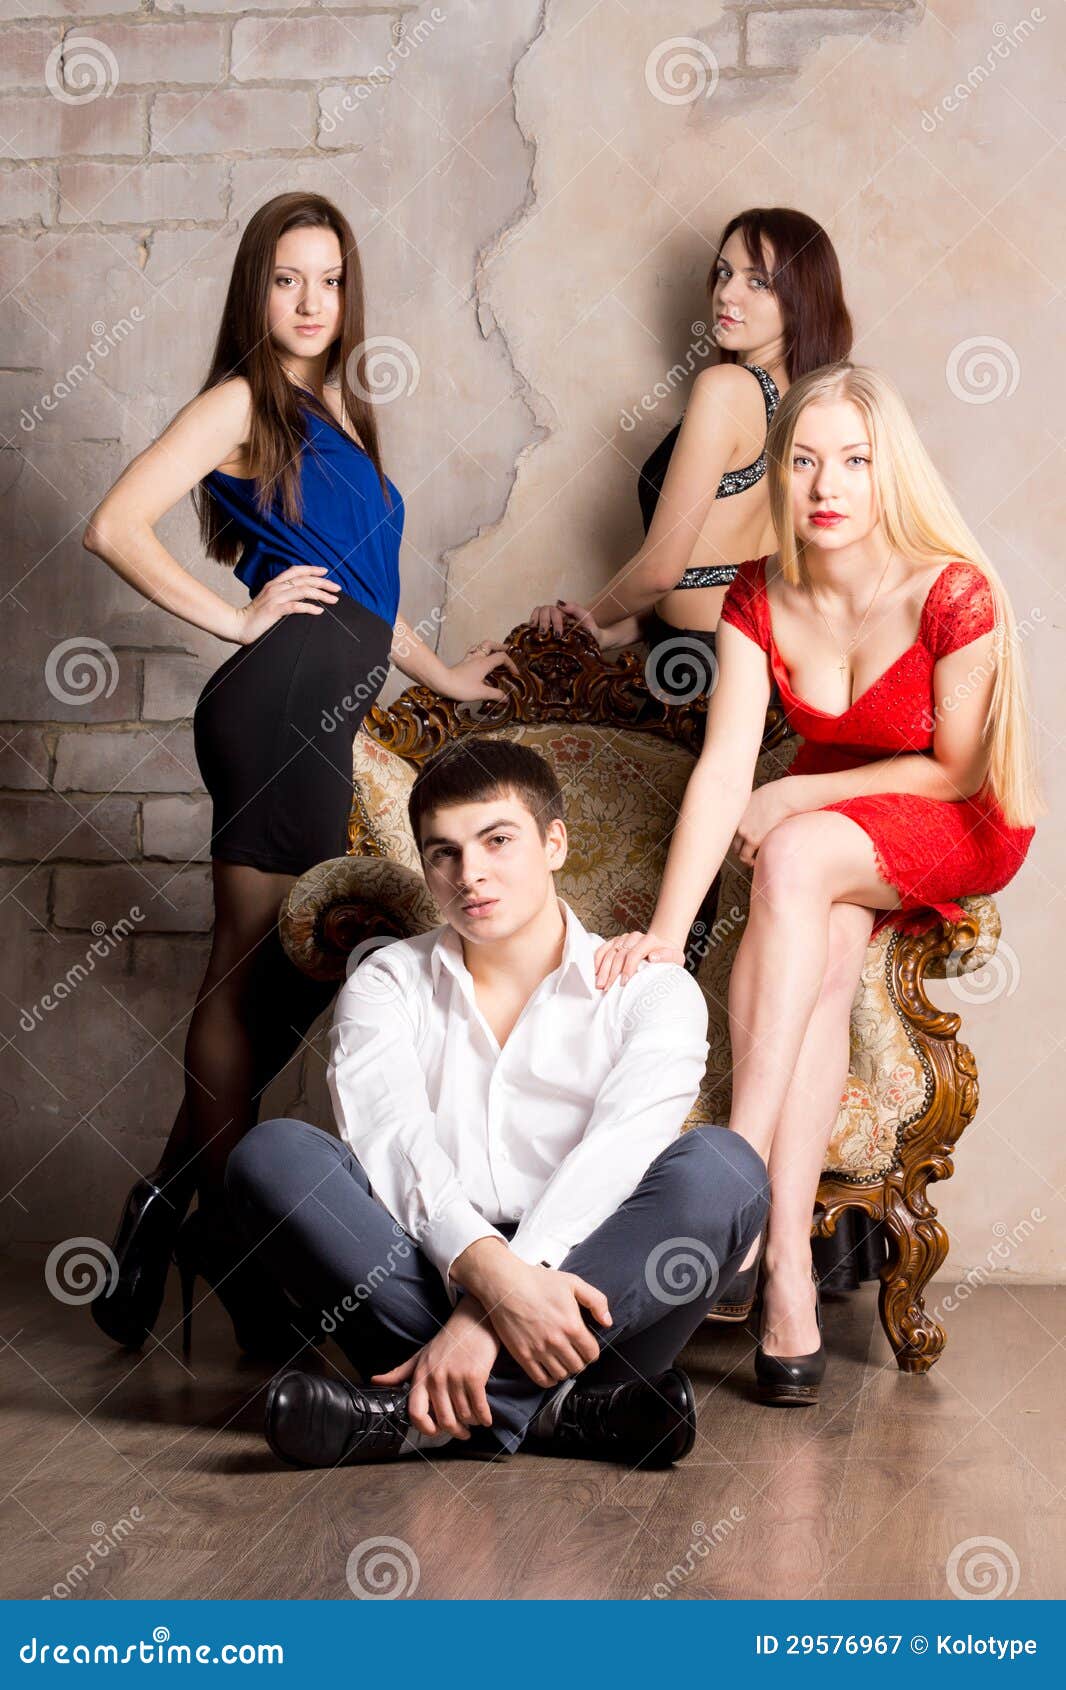 Один мужик несколько баб. Девушка в окружении мужчин. Фотосессия 3 женщины. Мужчина сидит в окружении девушек. Мужчина и 3 женщины.